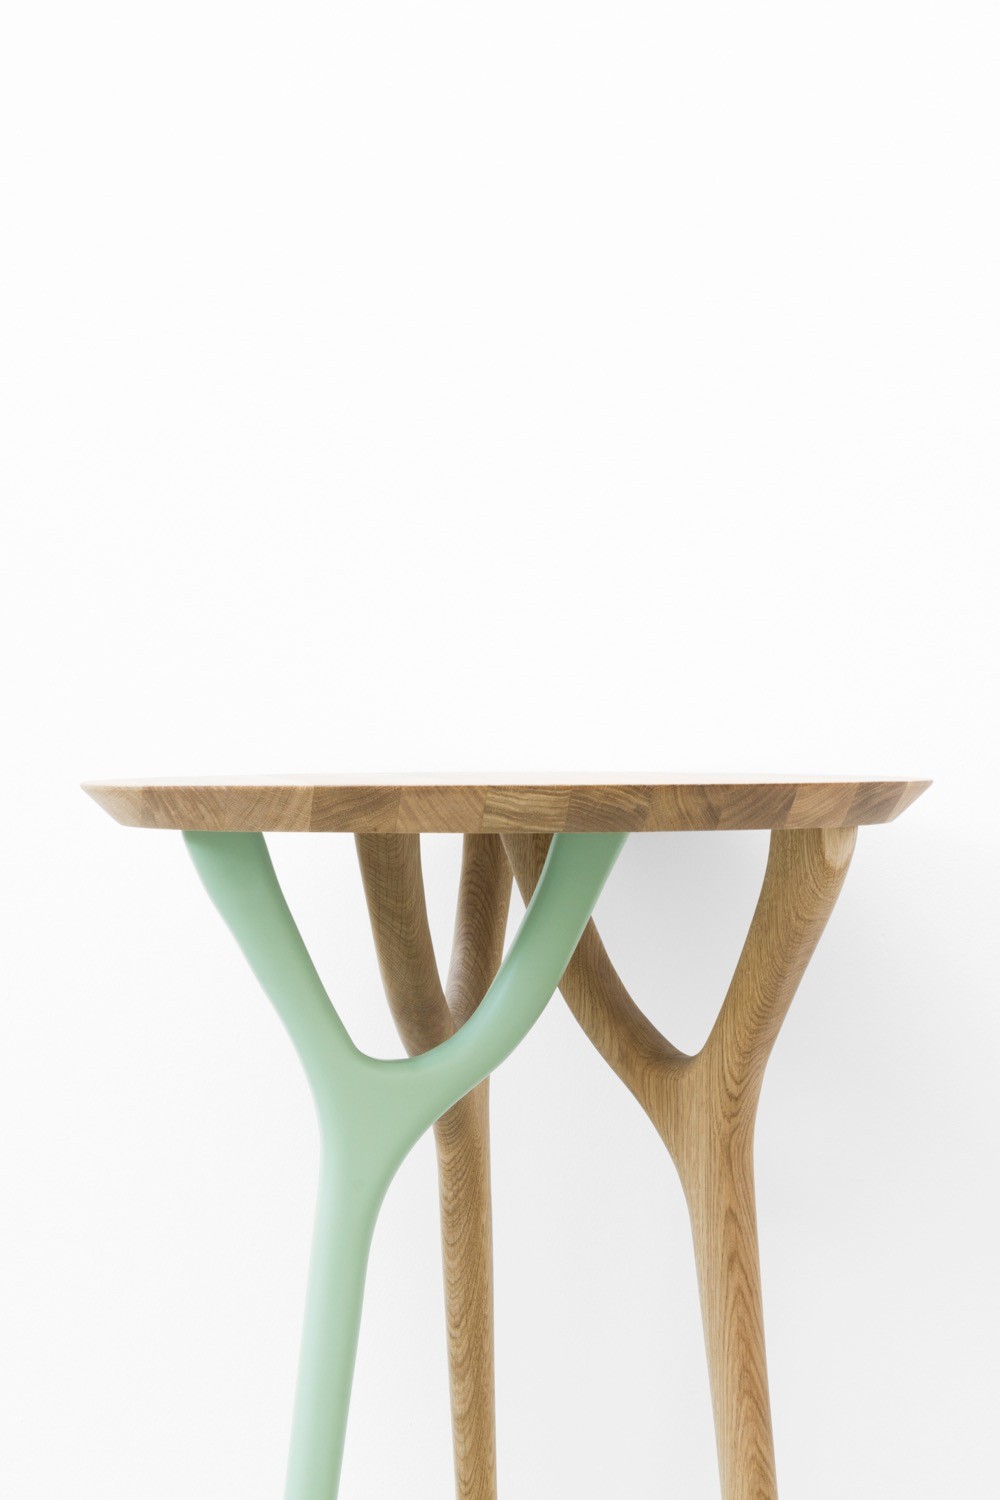 Il tavolino “Ghianda” (foto: Alessandro Esposito | courtesy: Cadriano)